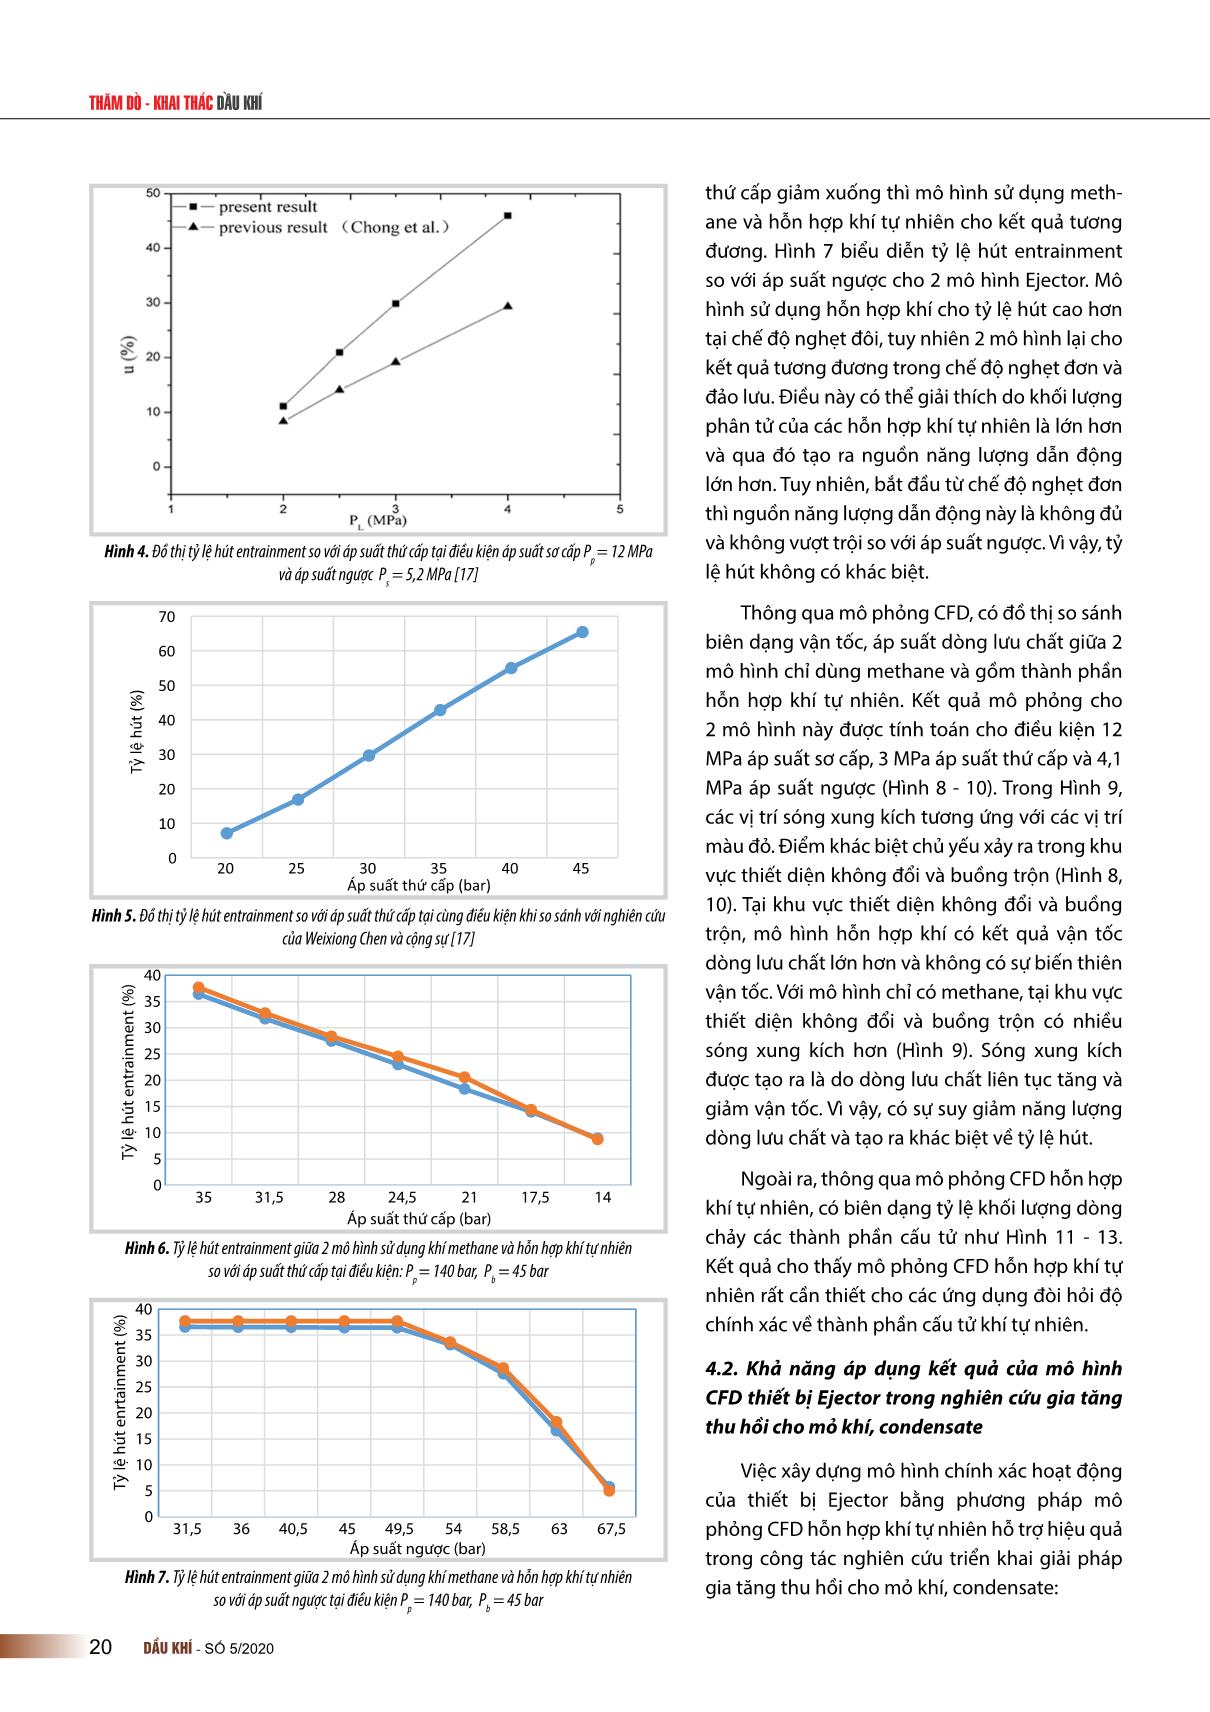 Nghiên cứu xây dựng mô hình mô phỏng động lực học chất lỏng tính toán (CFD) cho thiết bị Ejector sử dụng nâng cao tỷ lệ thu hồi mỏ khí condensate Hải Thạch trang 7